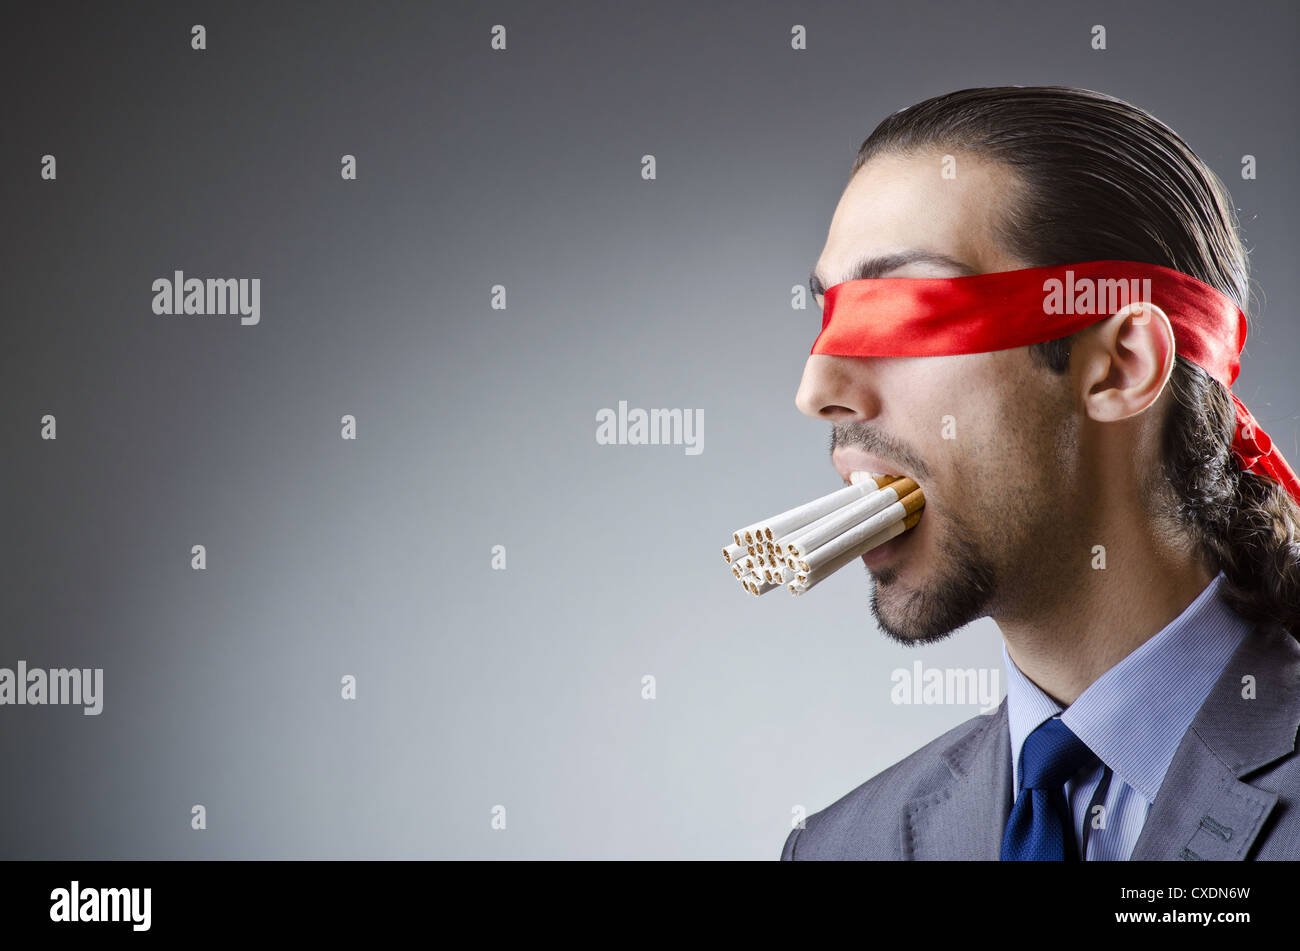 Человек с полным ртом сигарет. Чел с полным ртом сигарет. Шпион с сигаретами во рту.